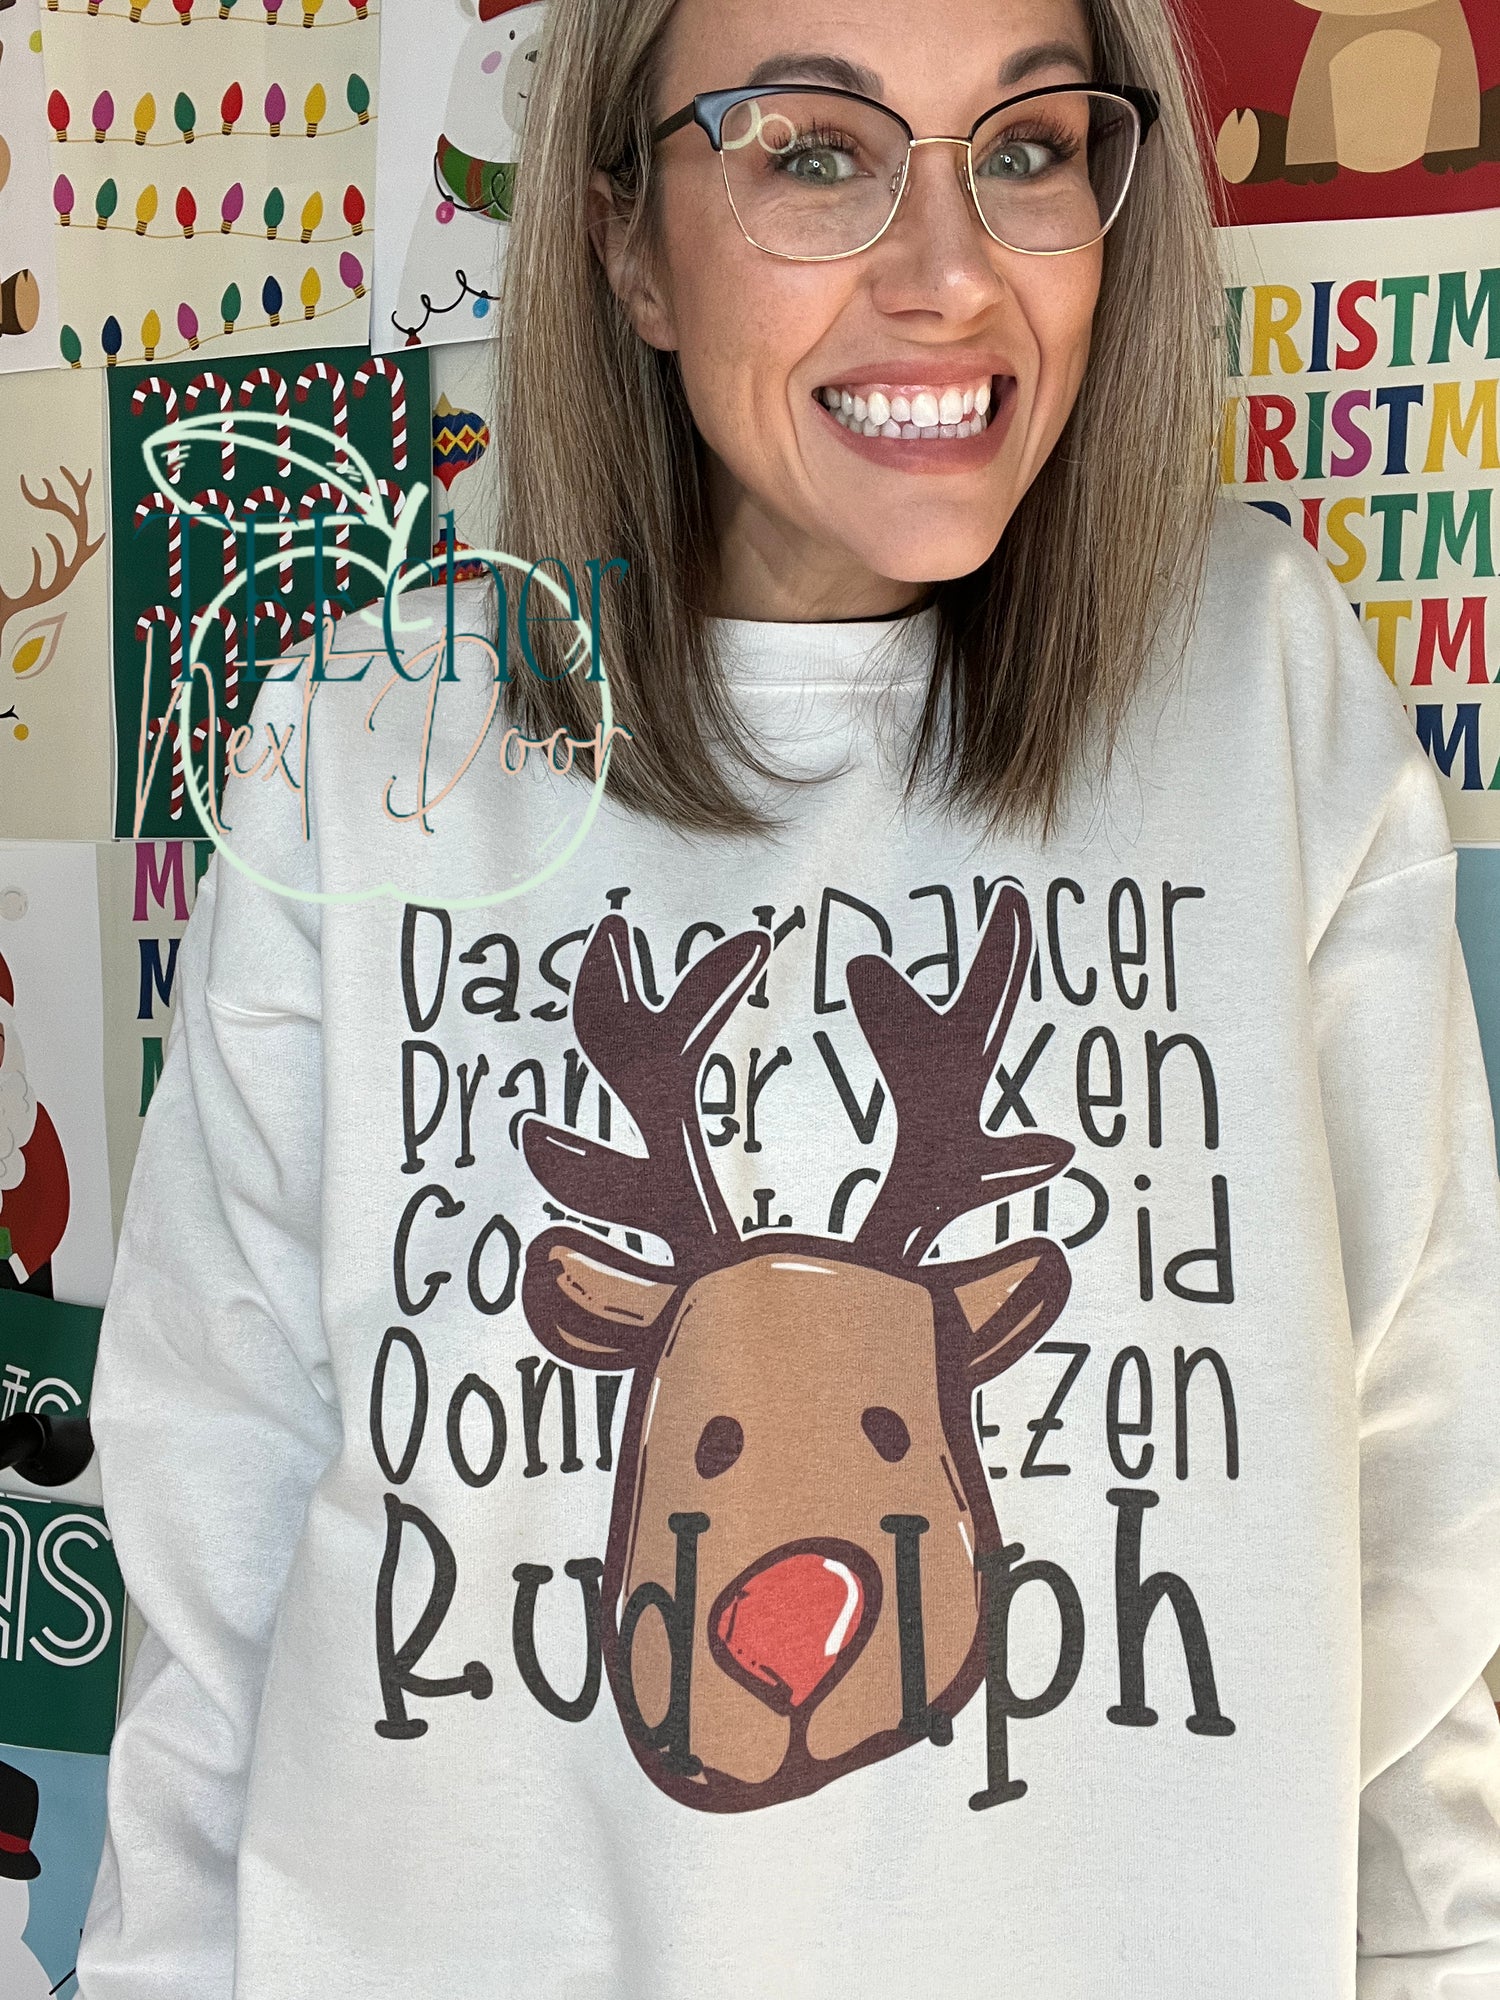 Santa's reindeers sweatshirt. 